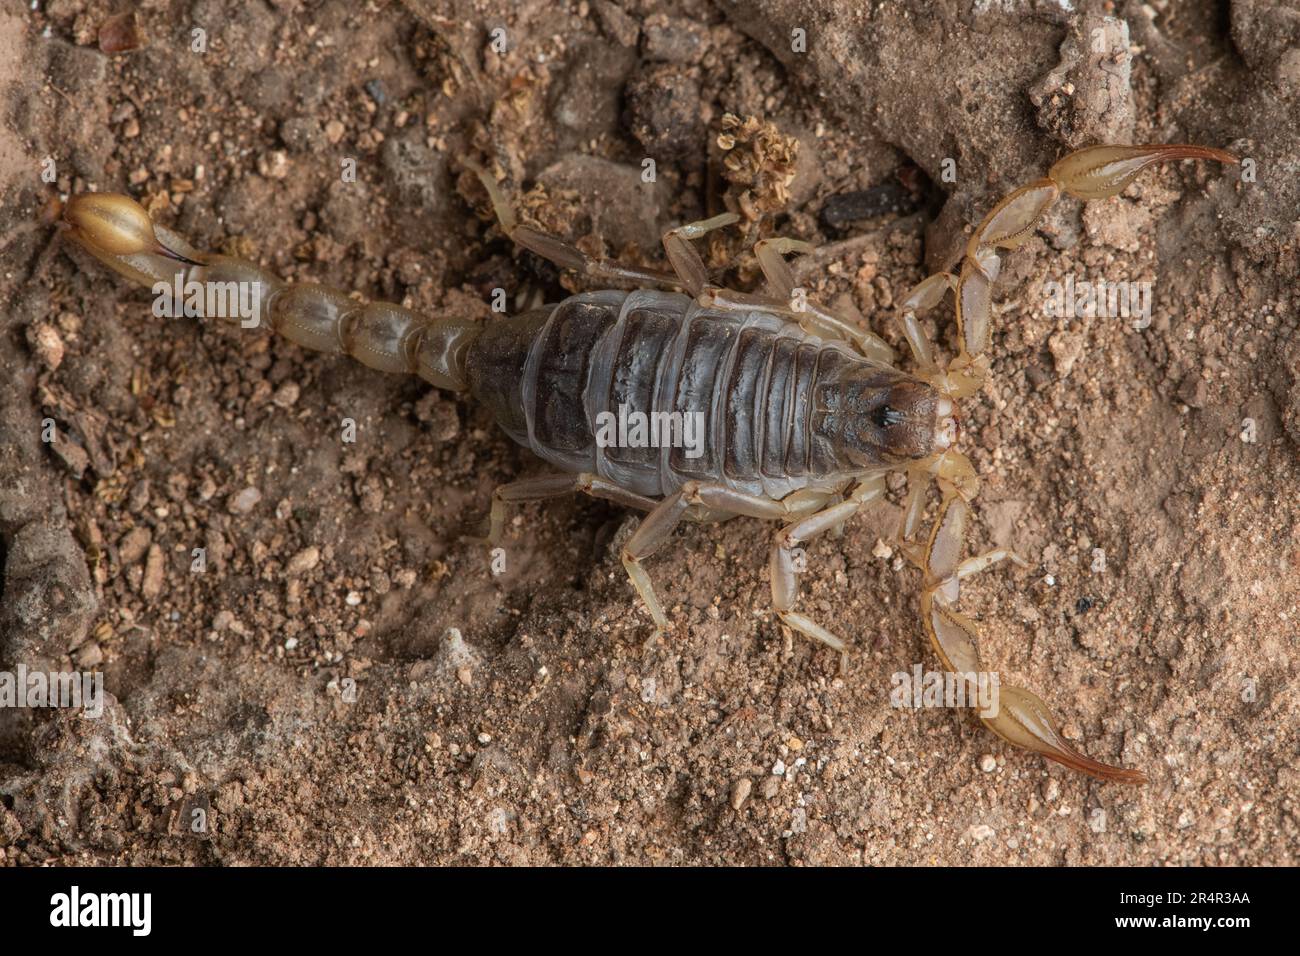 California common scorpion - Paruroctonus silvestrii from Contra Costa County, California, USA. Stock Photo